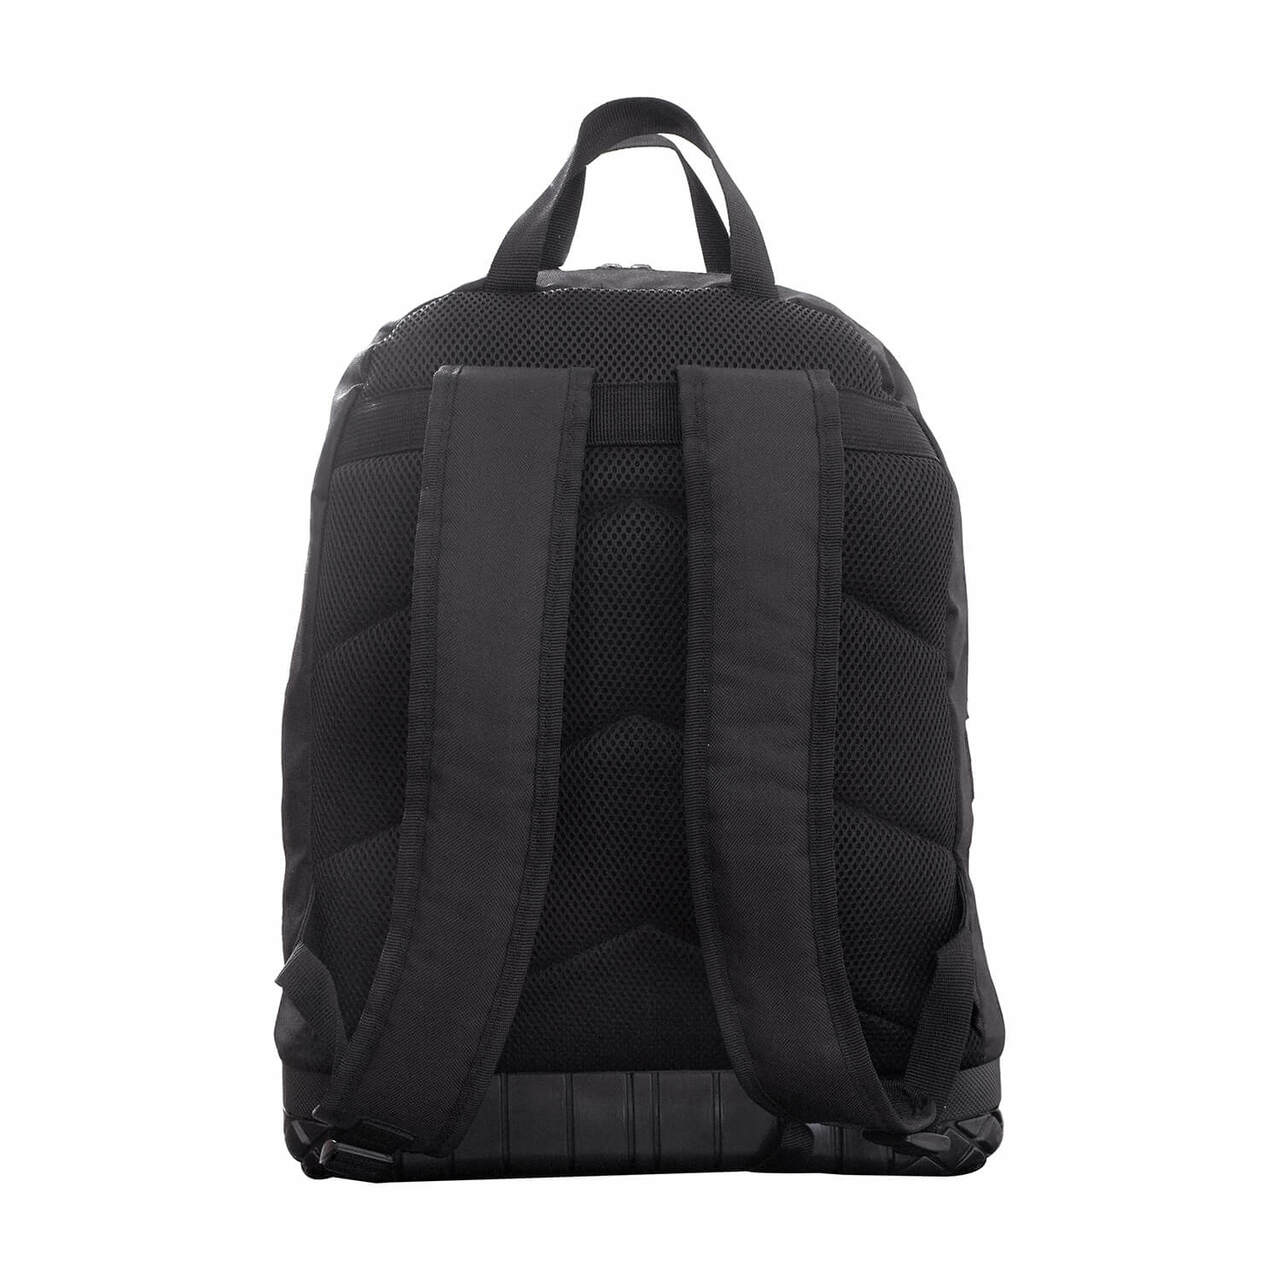 UNLV Rebels Tool Bag Backpack